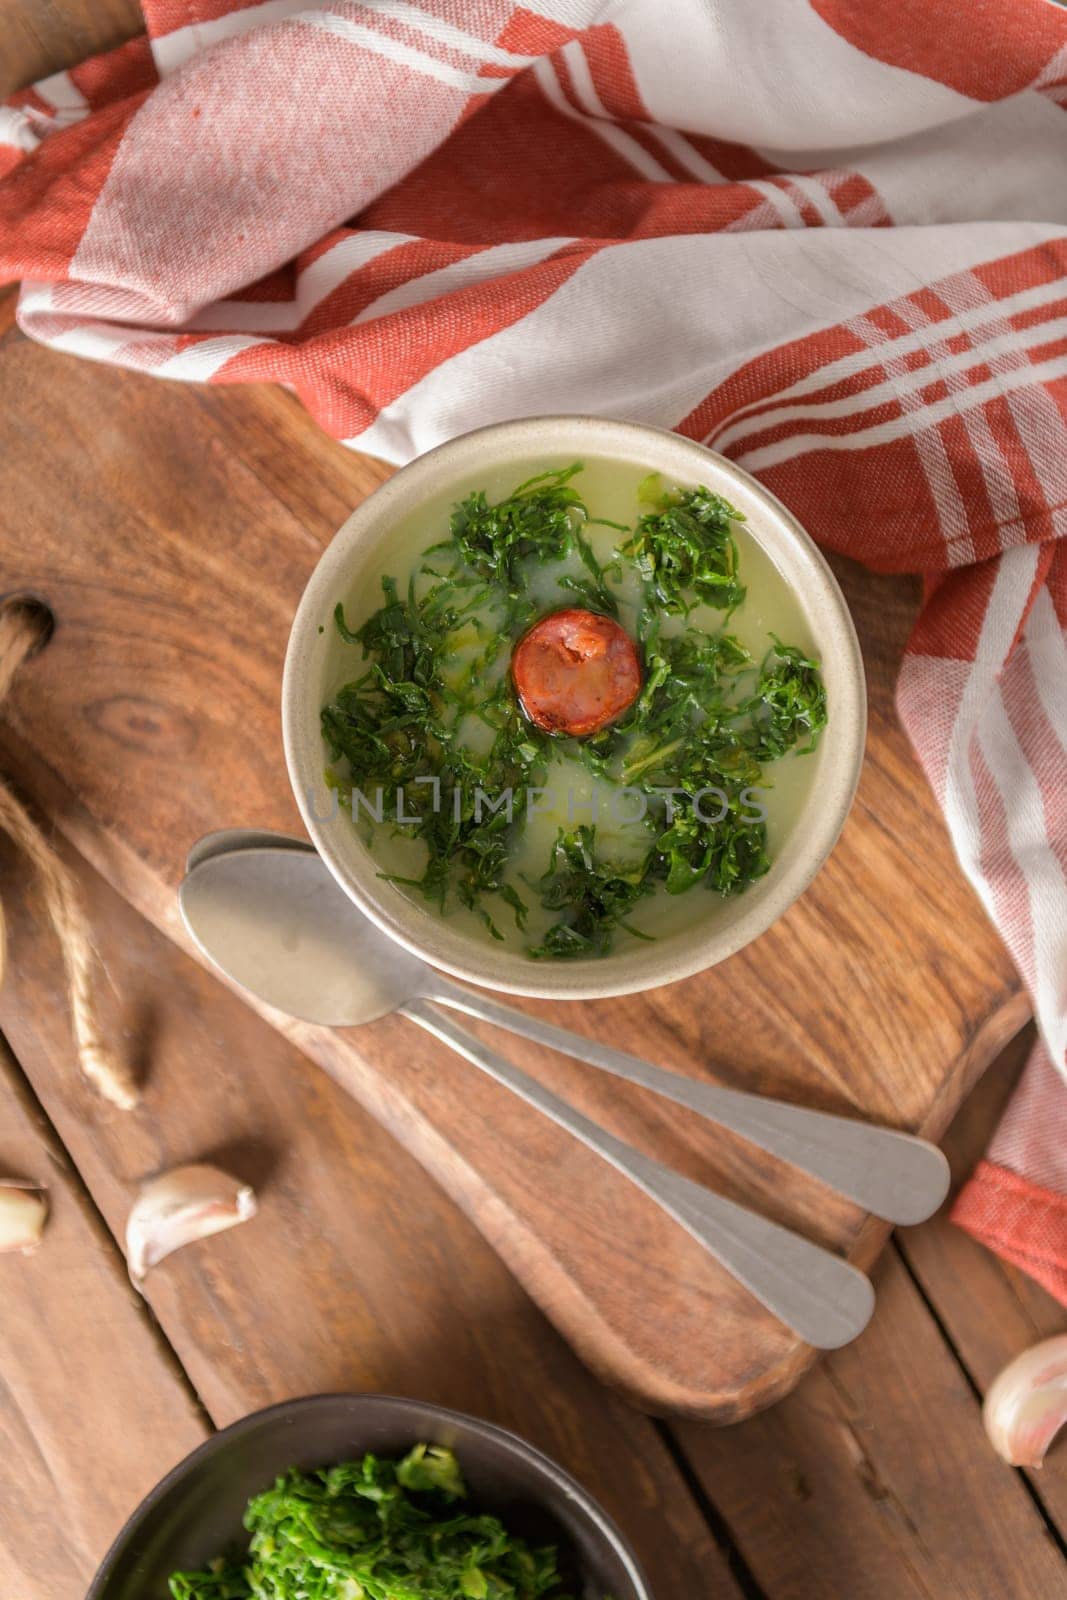 Caldo verde soup by homydesign